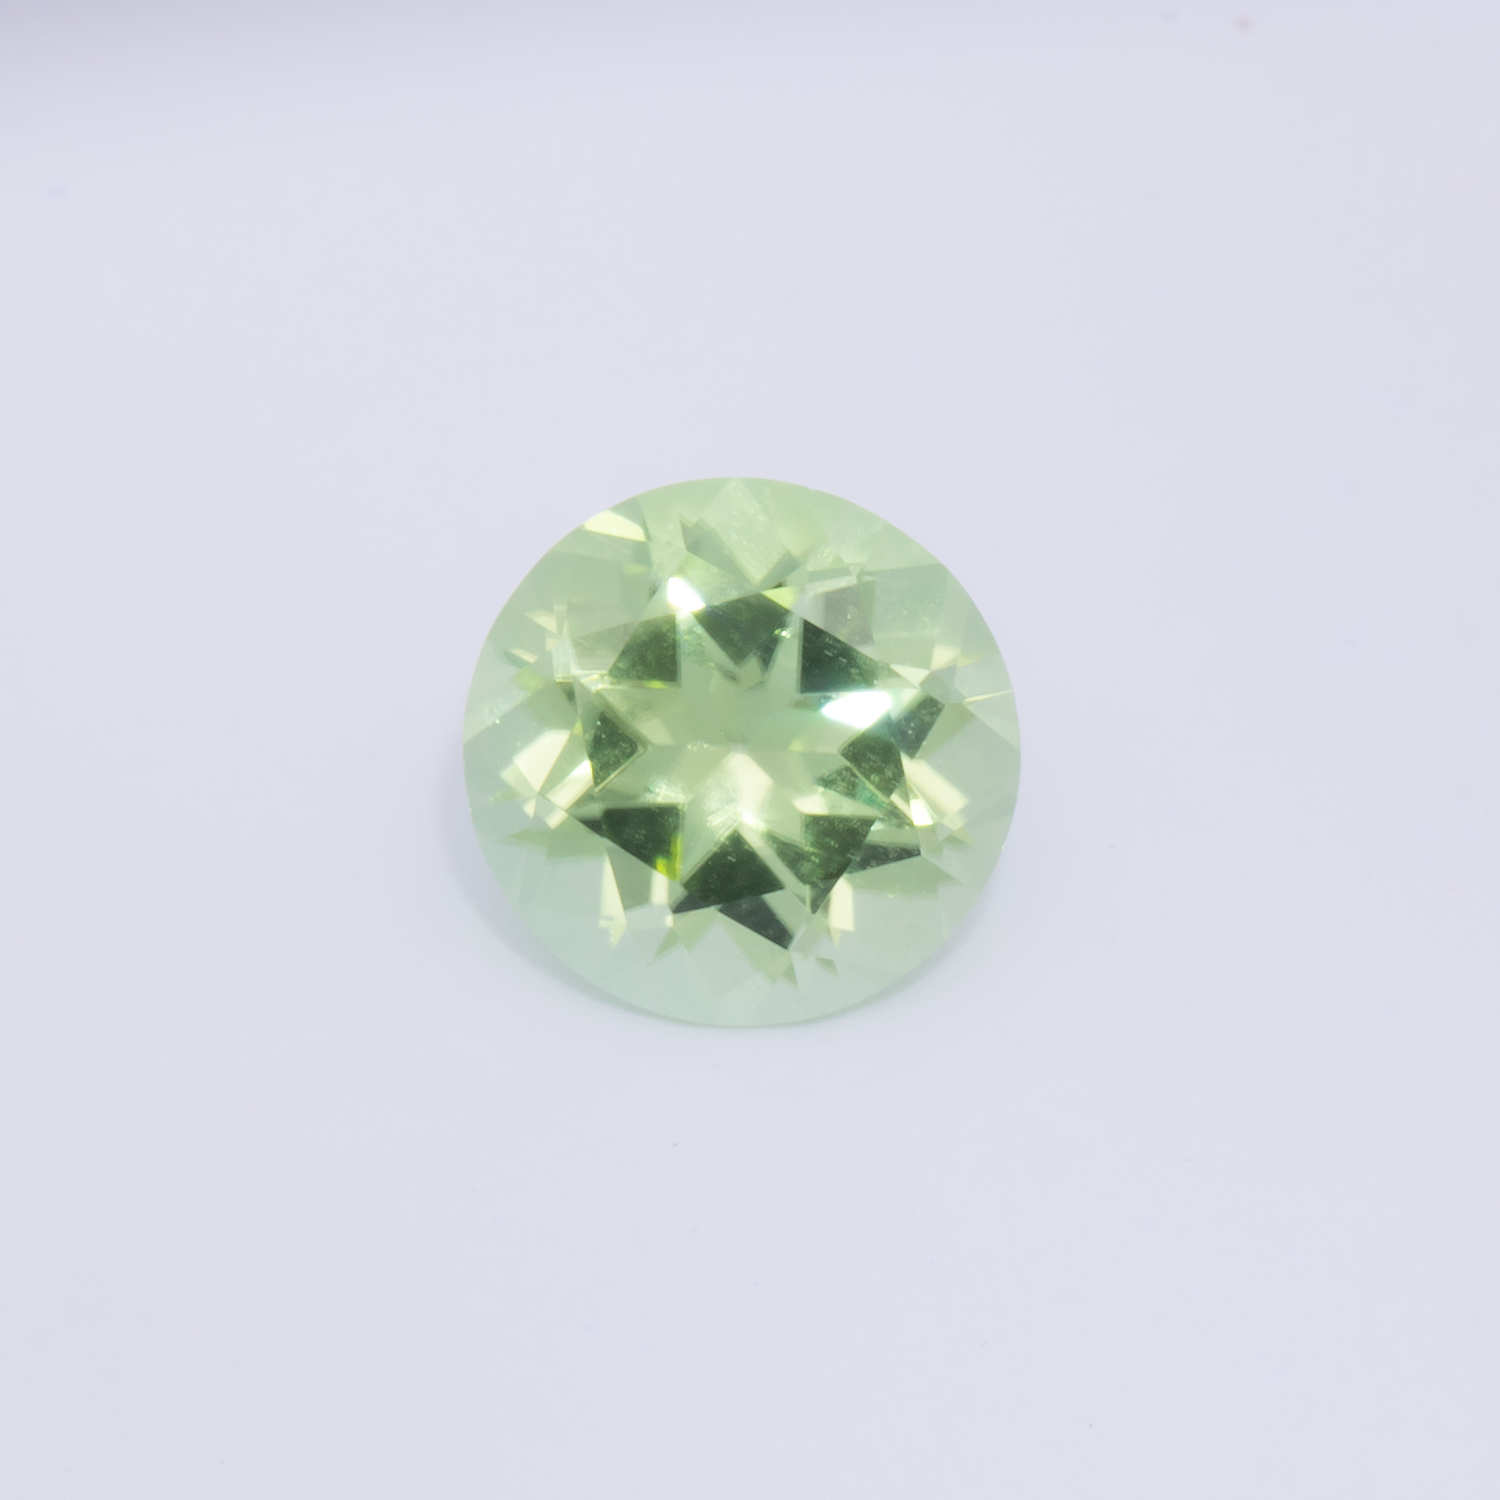 Peridot - grün, rund, 5.9x5.9 mm, 0.74 - 0.79 cts, Nr. PR40001